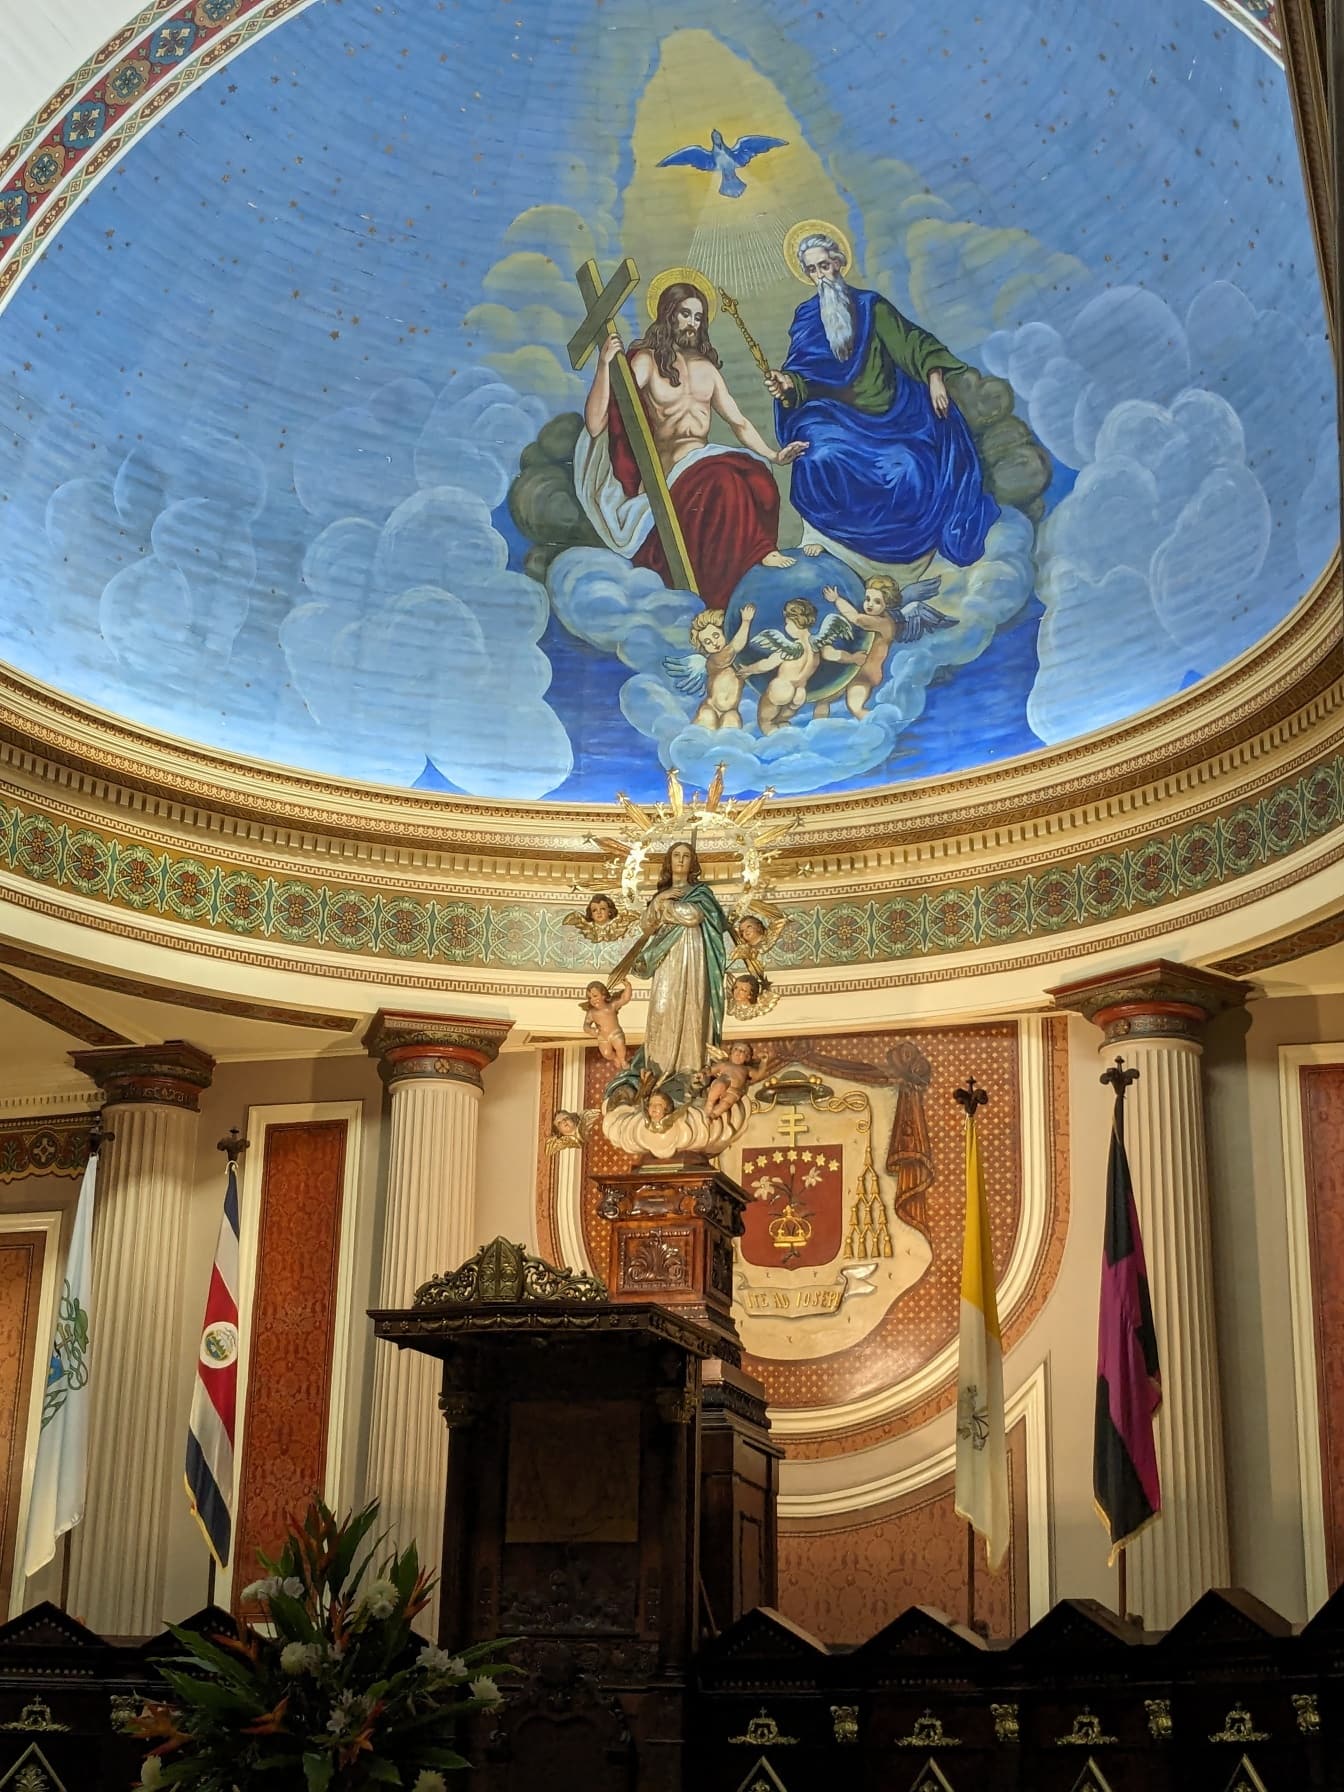 San Jose’s Metropolitan kathedraal met koepel met een frescco op het plafond